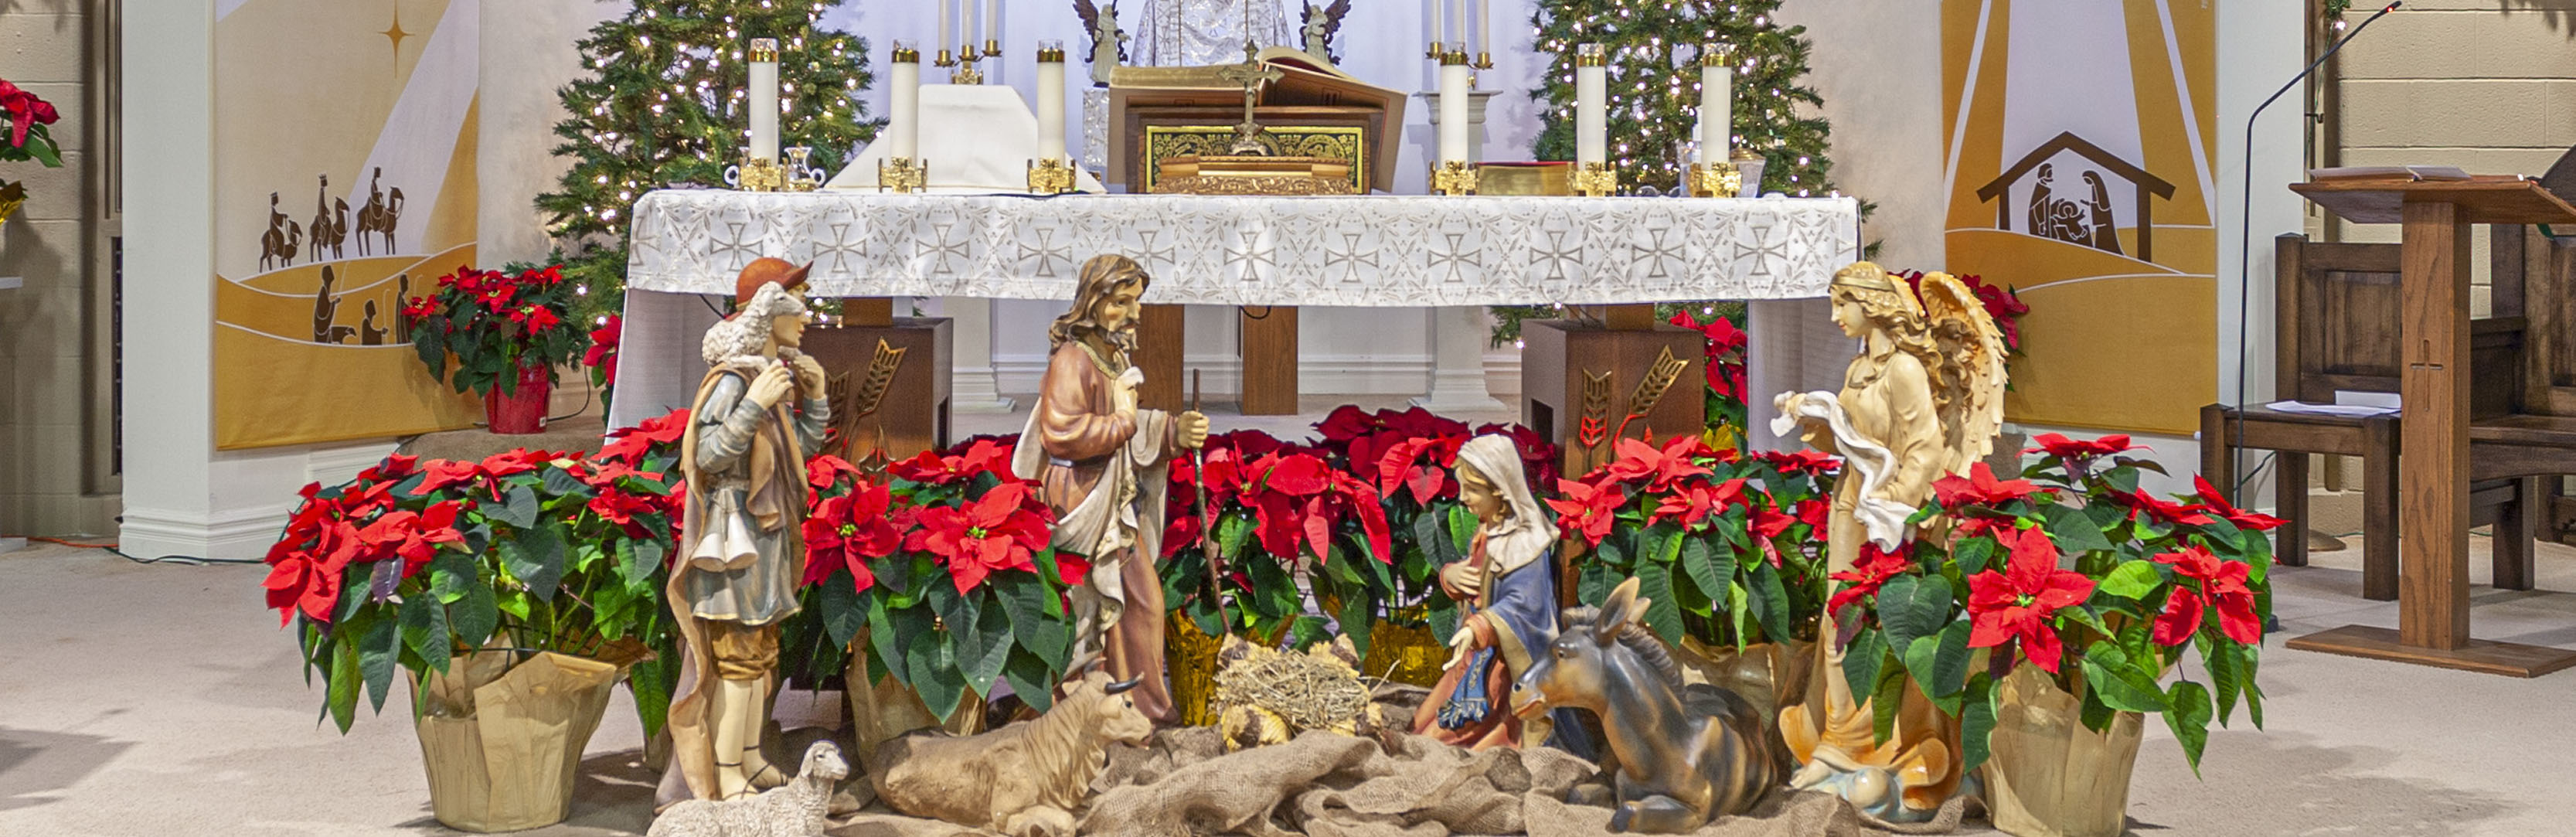 Christmas Nativity on Altar